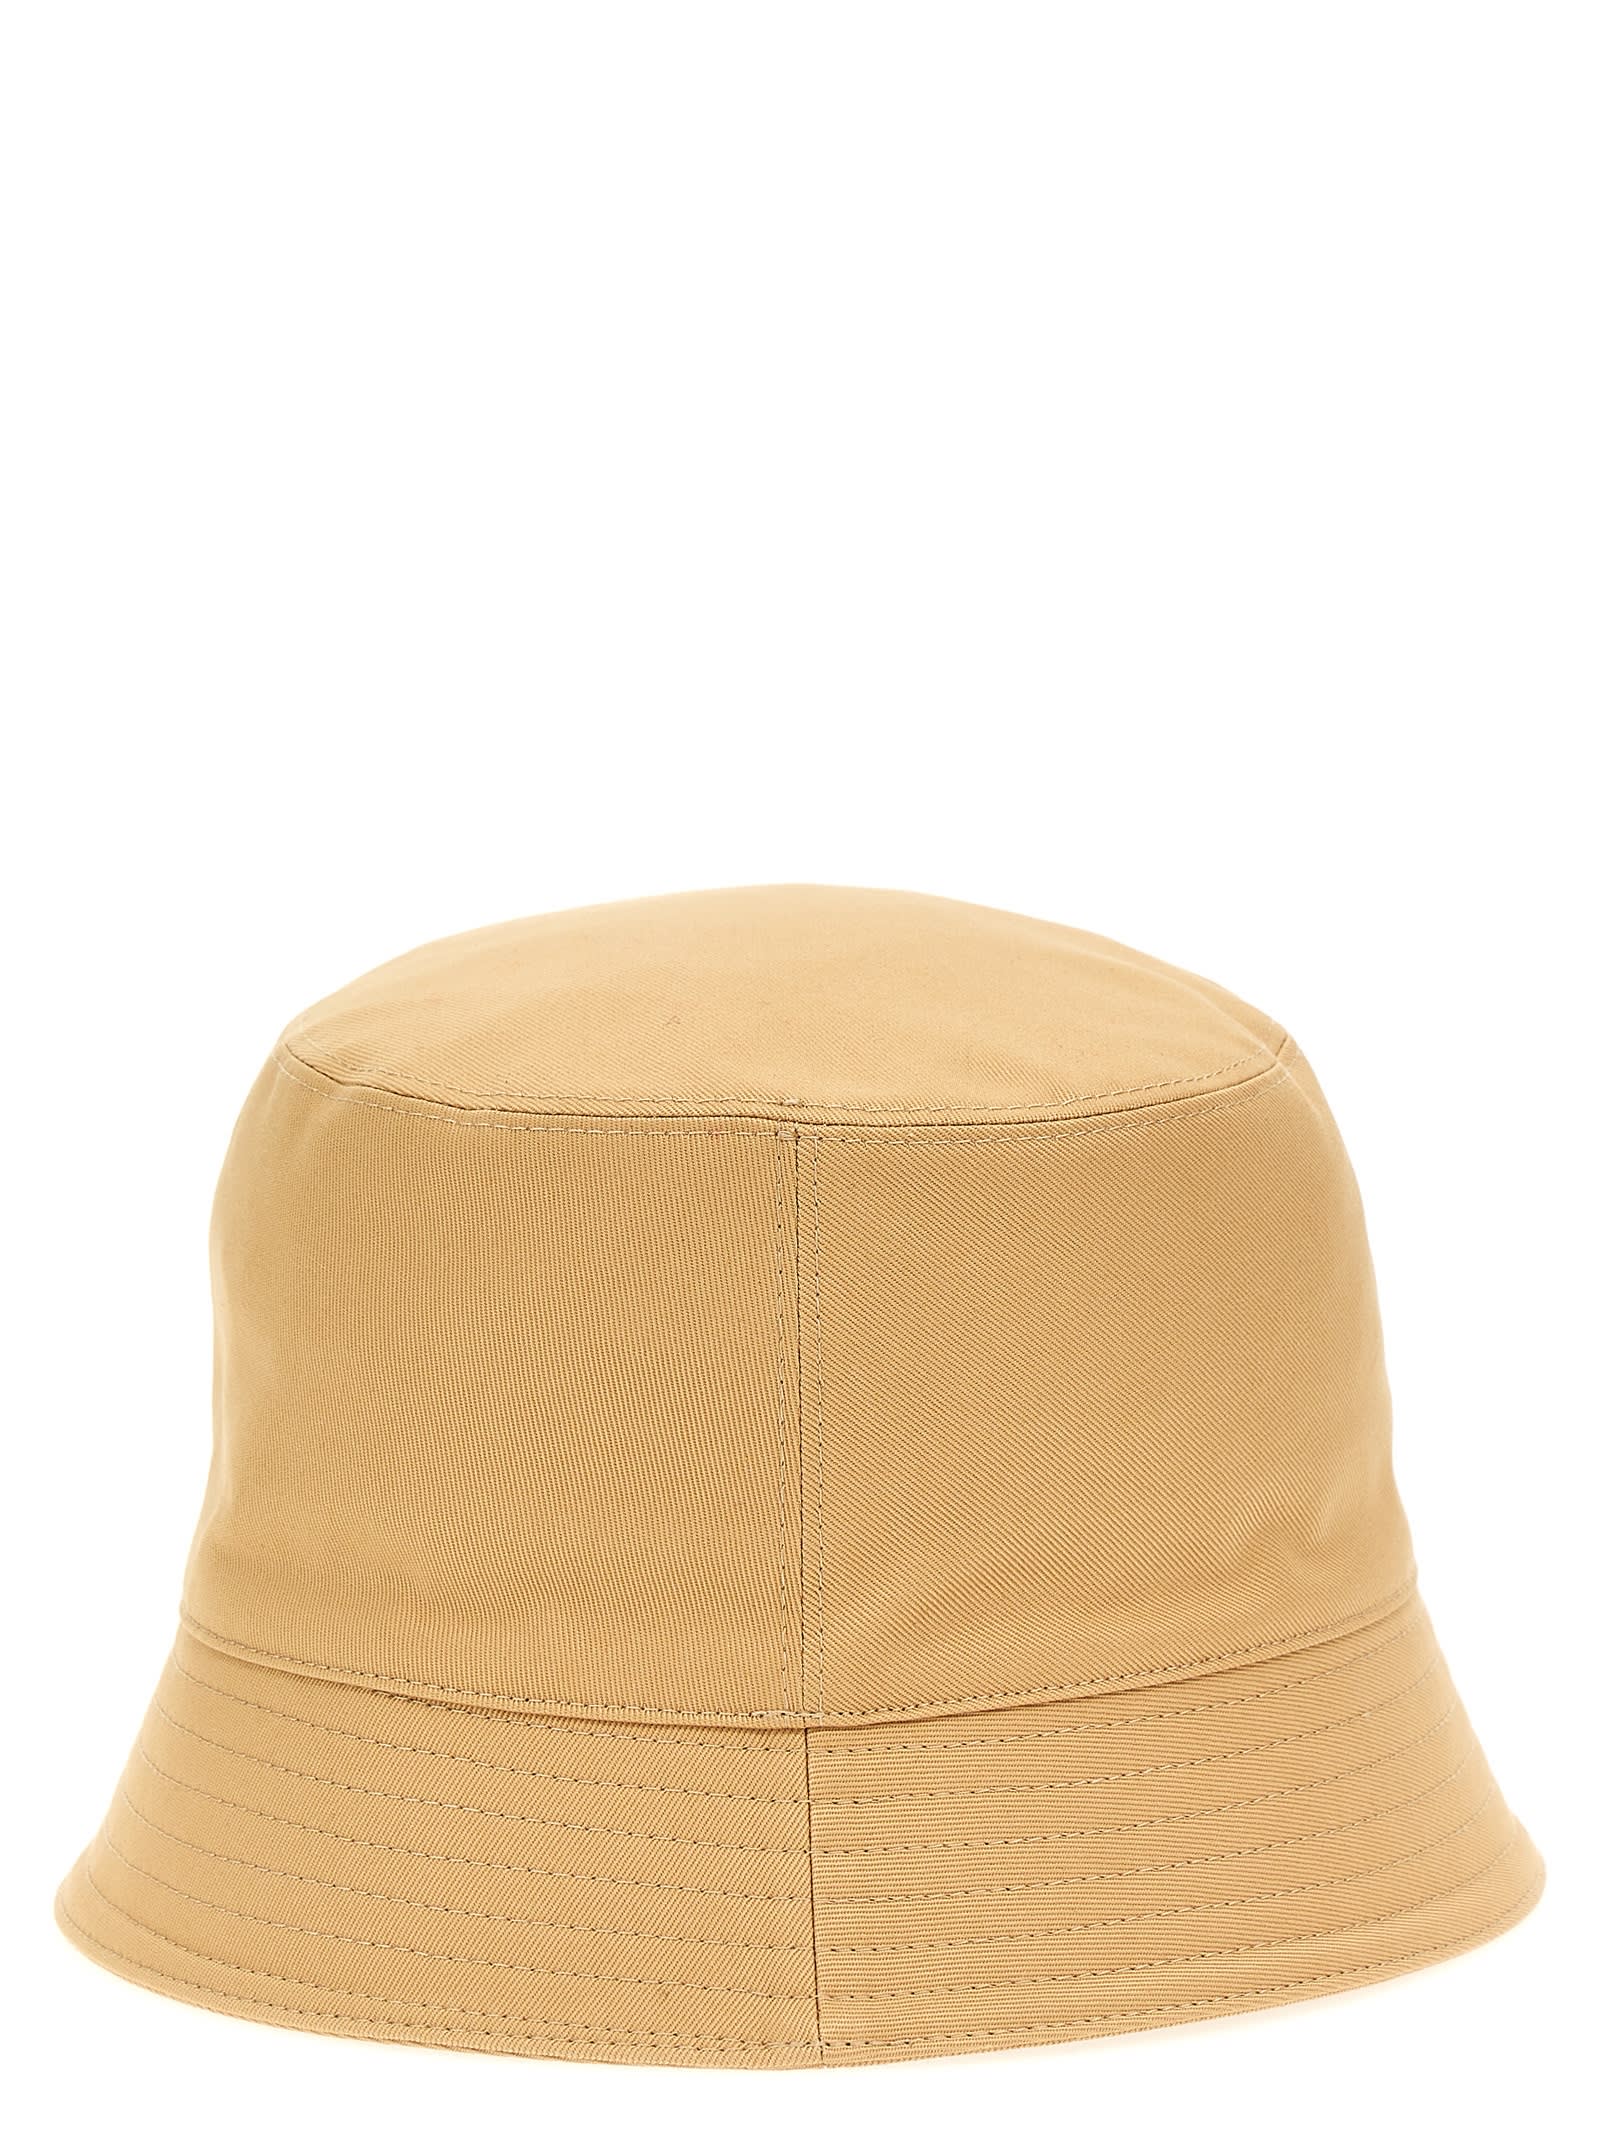 Shop Marni Logo Embroidery Bucket Hat In Beige